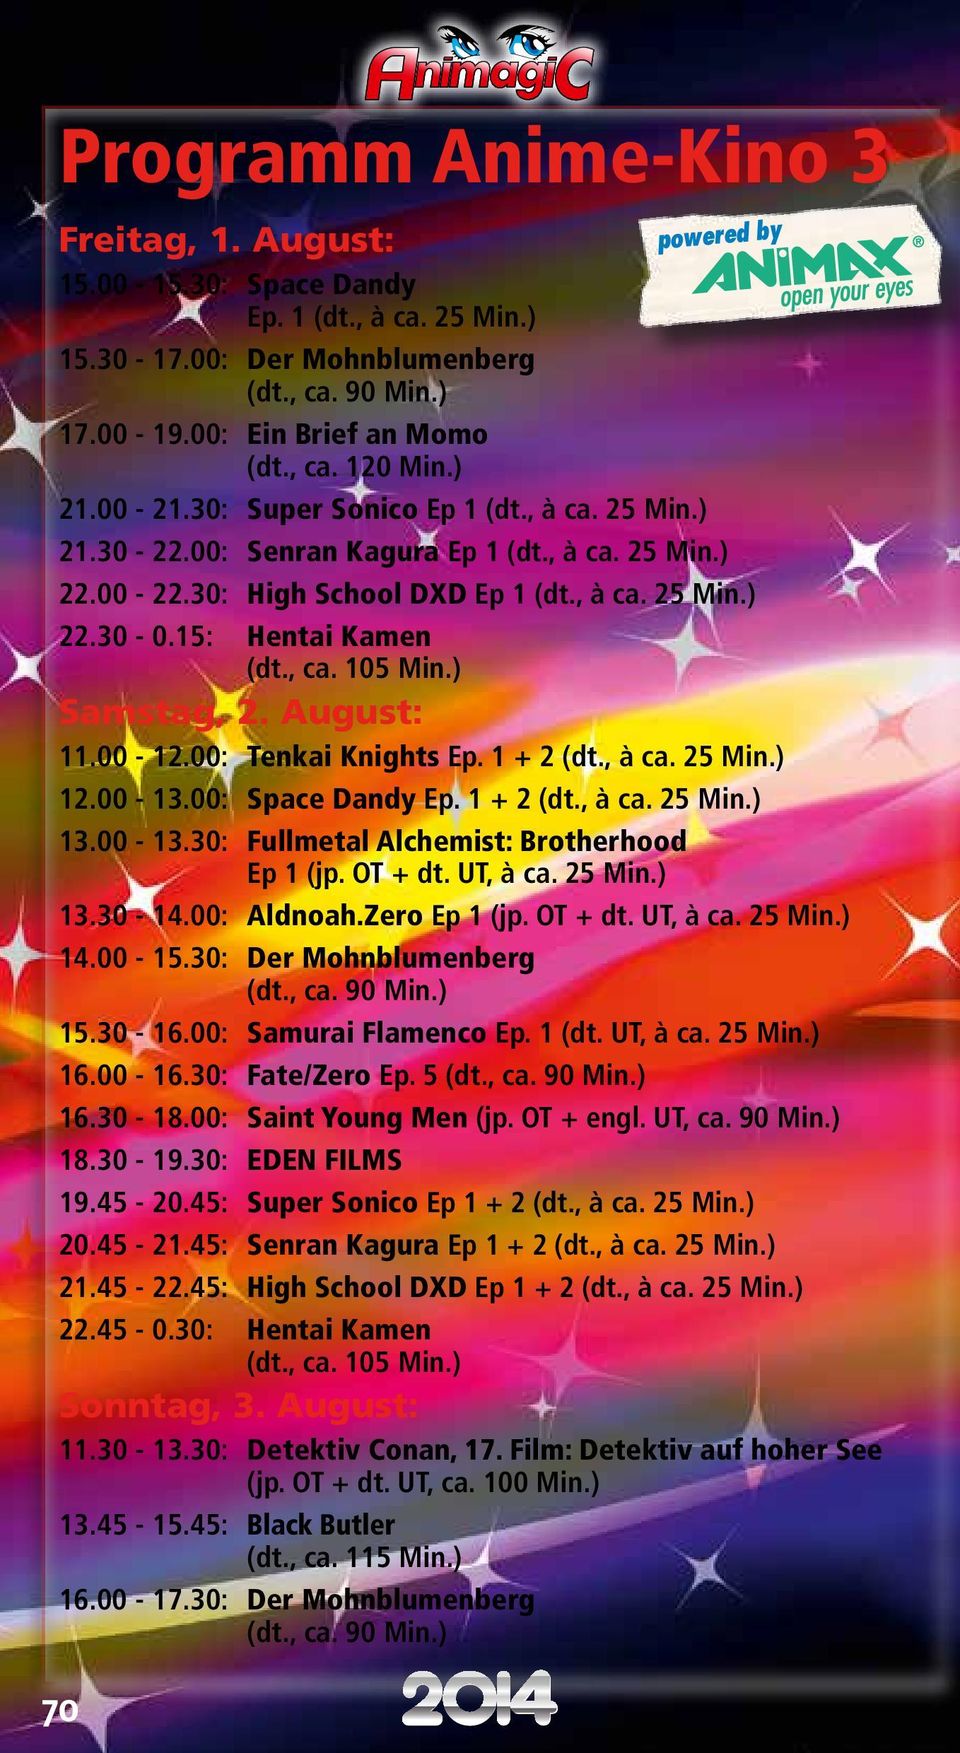 00-12.00: Tenkai Knights Ep. 1 + 2 (dt., à ca. 25 Min.) 12.00-13.00: Space Dandy Ep. 1 + 2 (dt., à ca. 25 Min.) 13.00-13.30: Fullmetal Alchemist: Brotherhood Ep 1 (jp. OT + dt. UT, à ca. 25 Min.) 13.30-14.